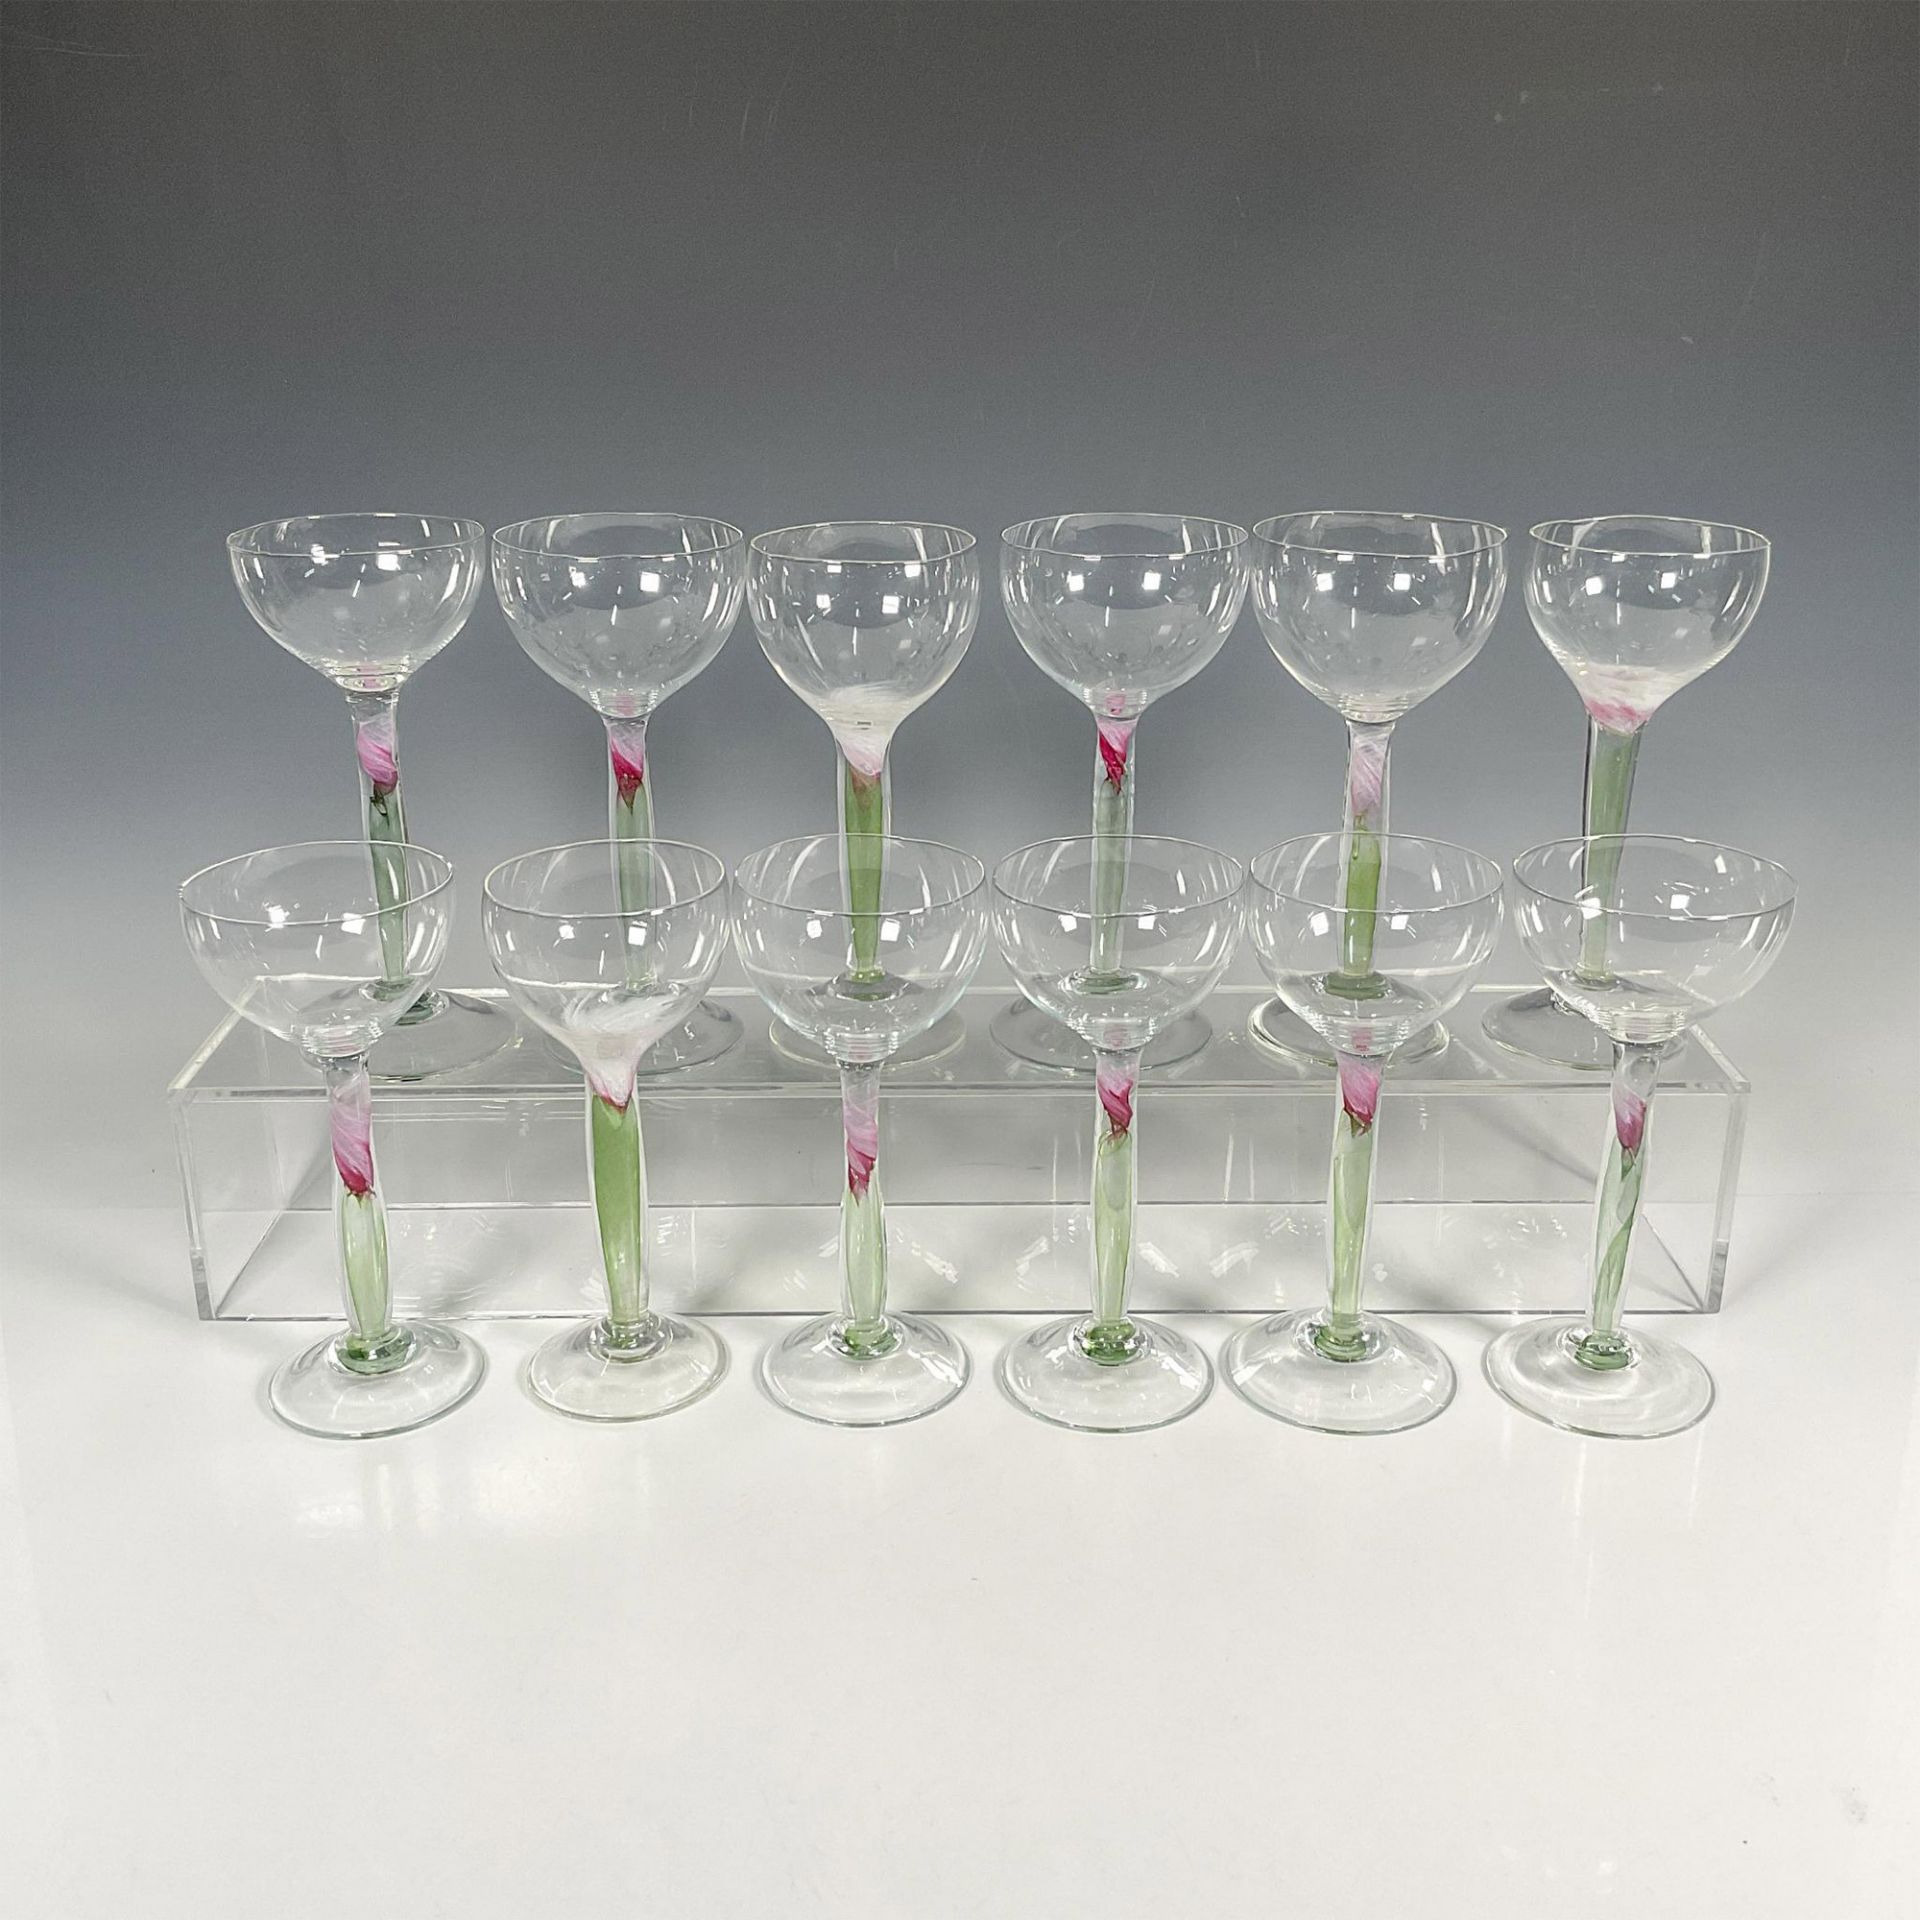 12pc Chris Baker Salmon Wine Glasses, Pink Flower Stem - Image 2 of 6